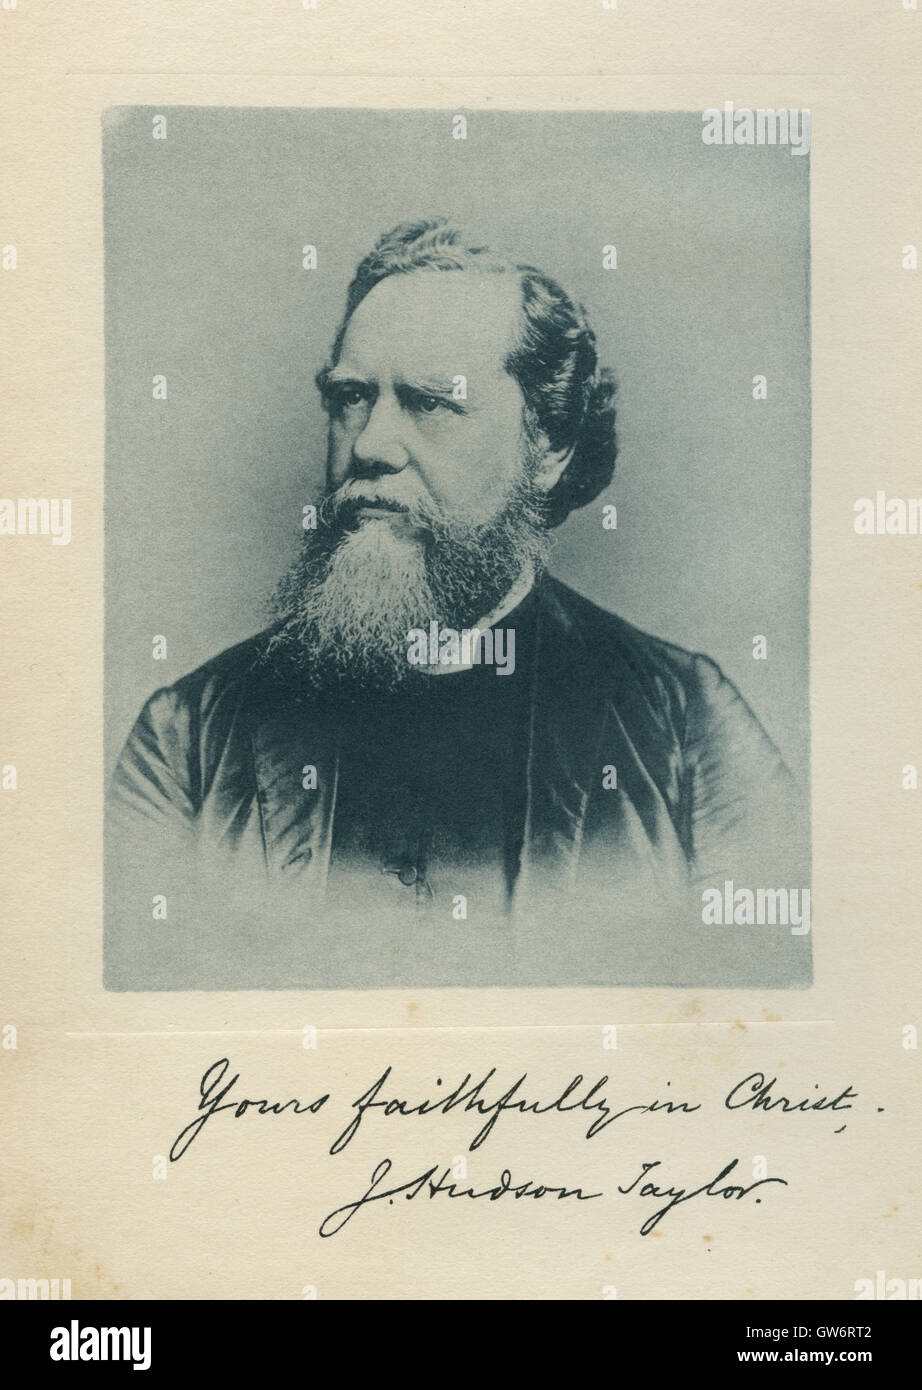 James Hudson Taylor (1832 – 1905), britischer protestantischen christlichen Missionar nach China und Gründer (1865) von der China Inland Mission. Foto c1885. Stockfoto